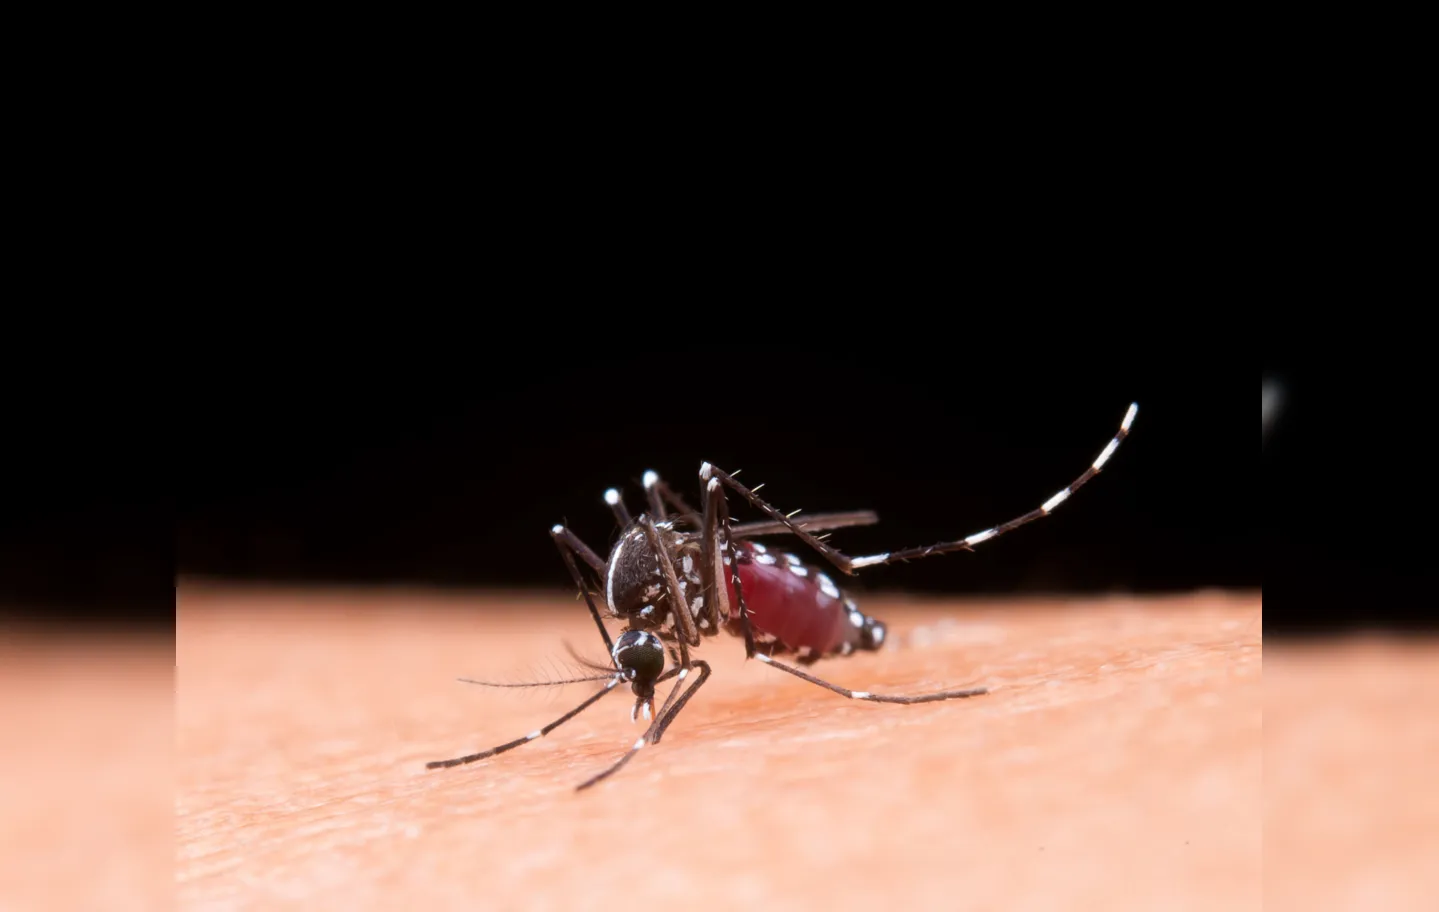 Município entrou, nesta sexta-feira, 21, em estado de alerta epidemiológico máximo, por causa dos casos da dengue, de acordo com decreto assinado pelo prefeito Colbert Martins Filho (MDB)